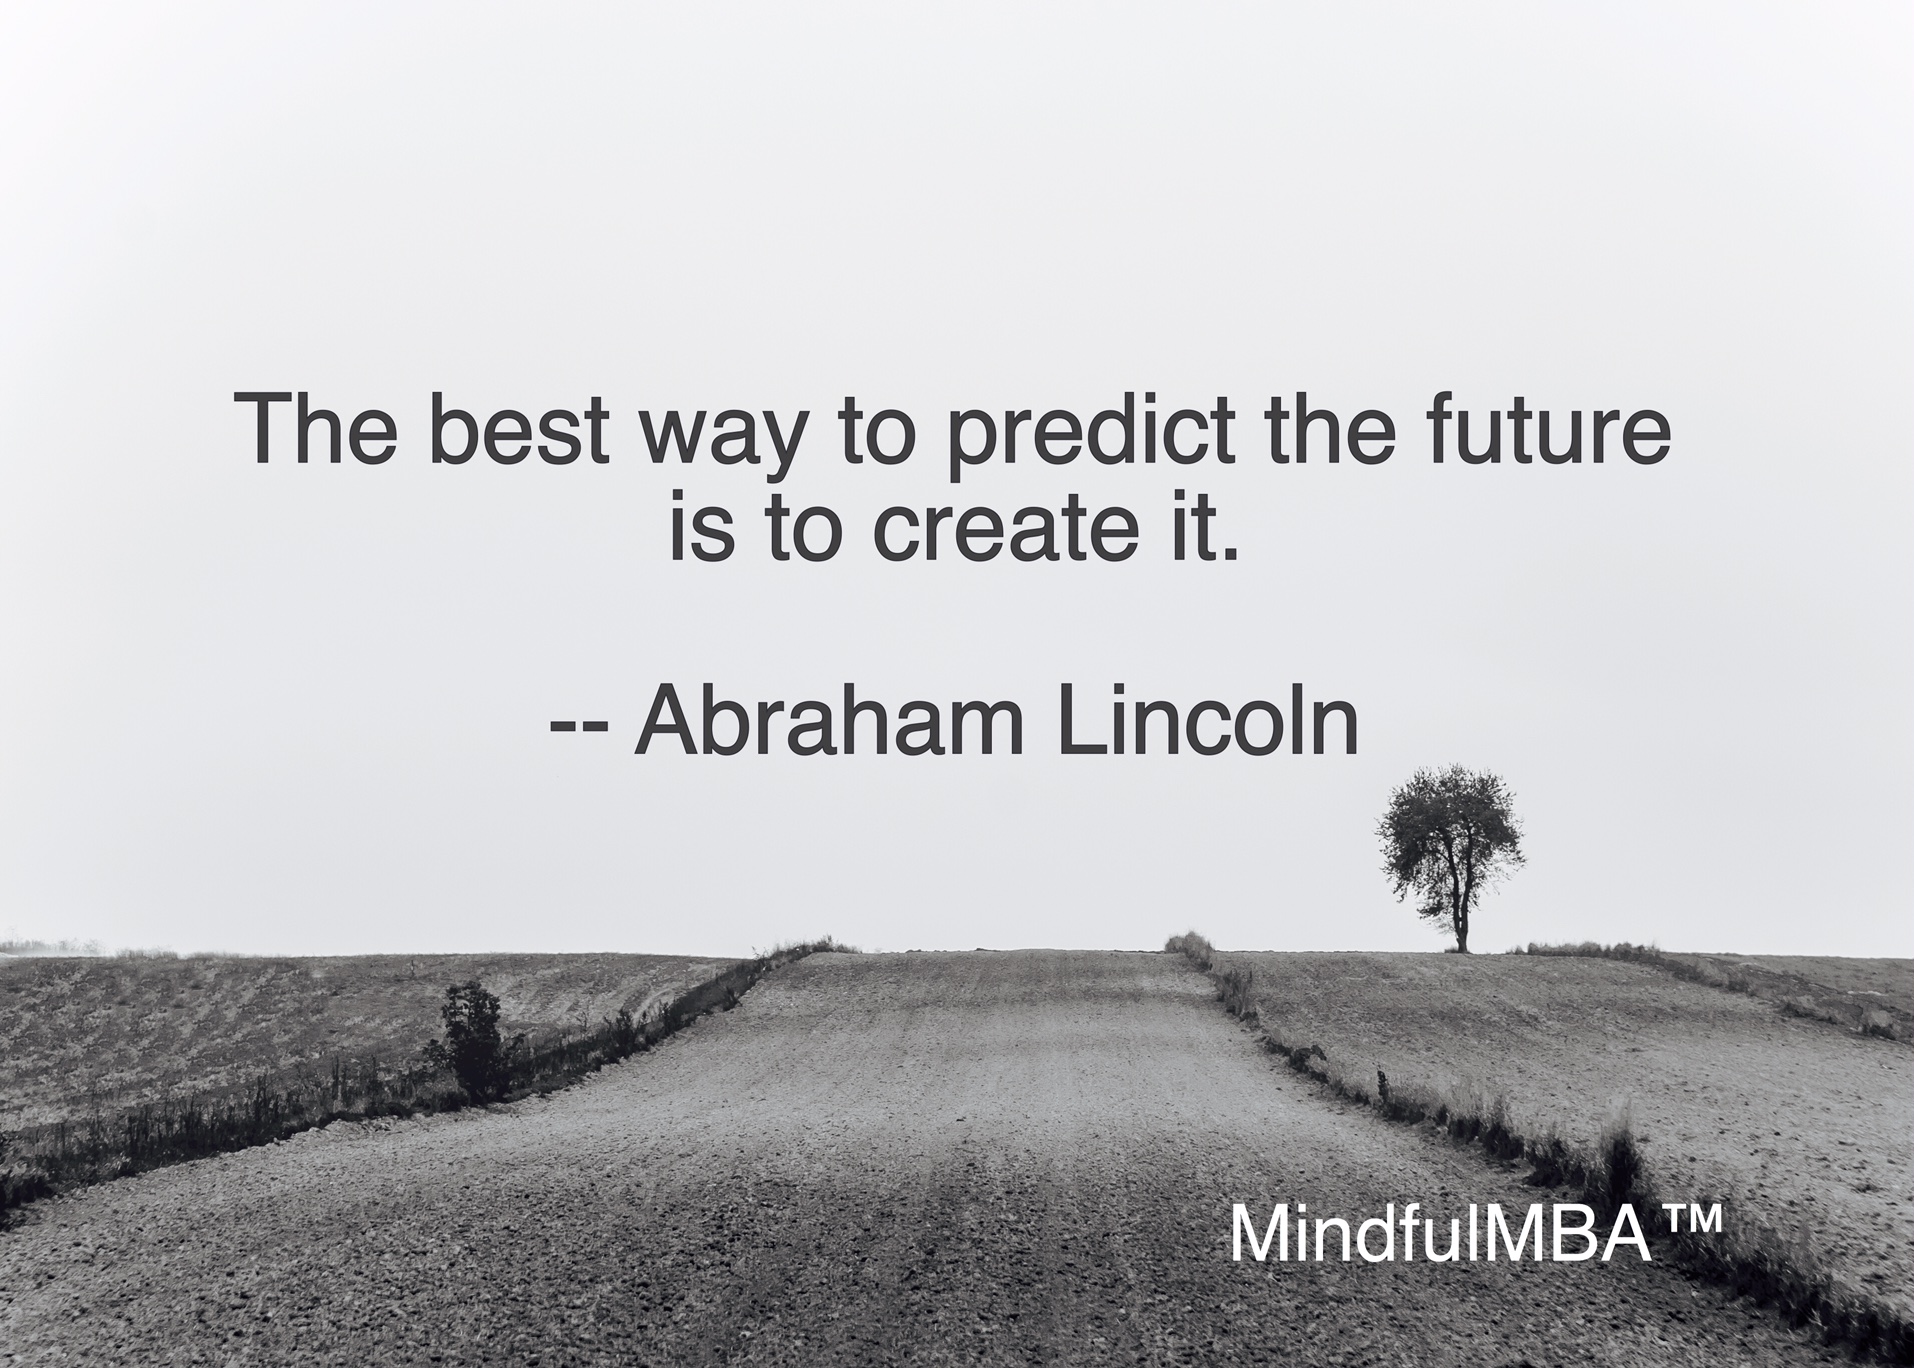 Lincoln future quote w tag